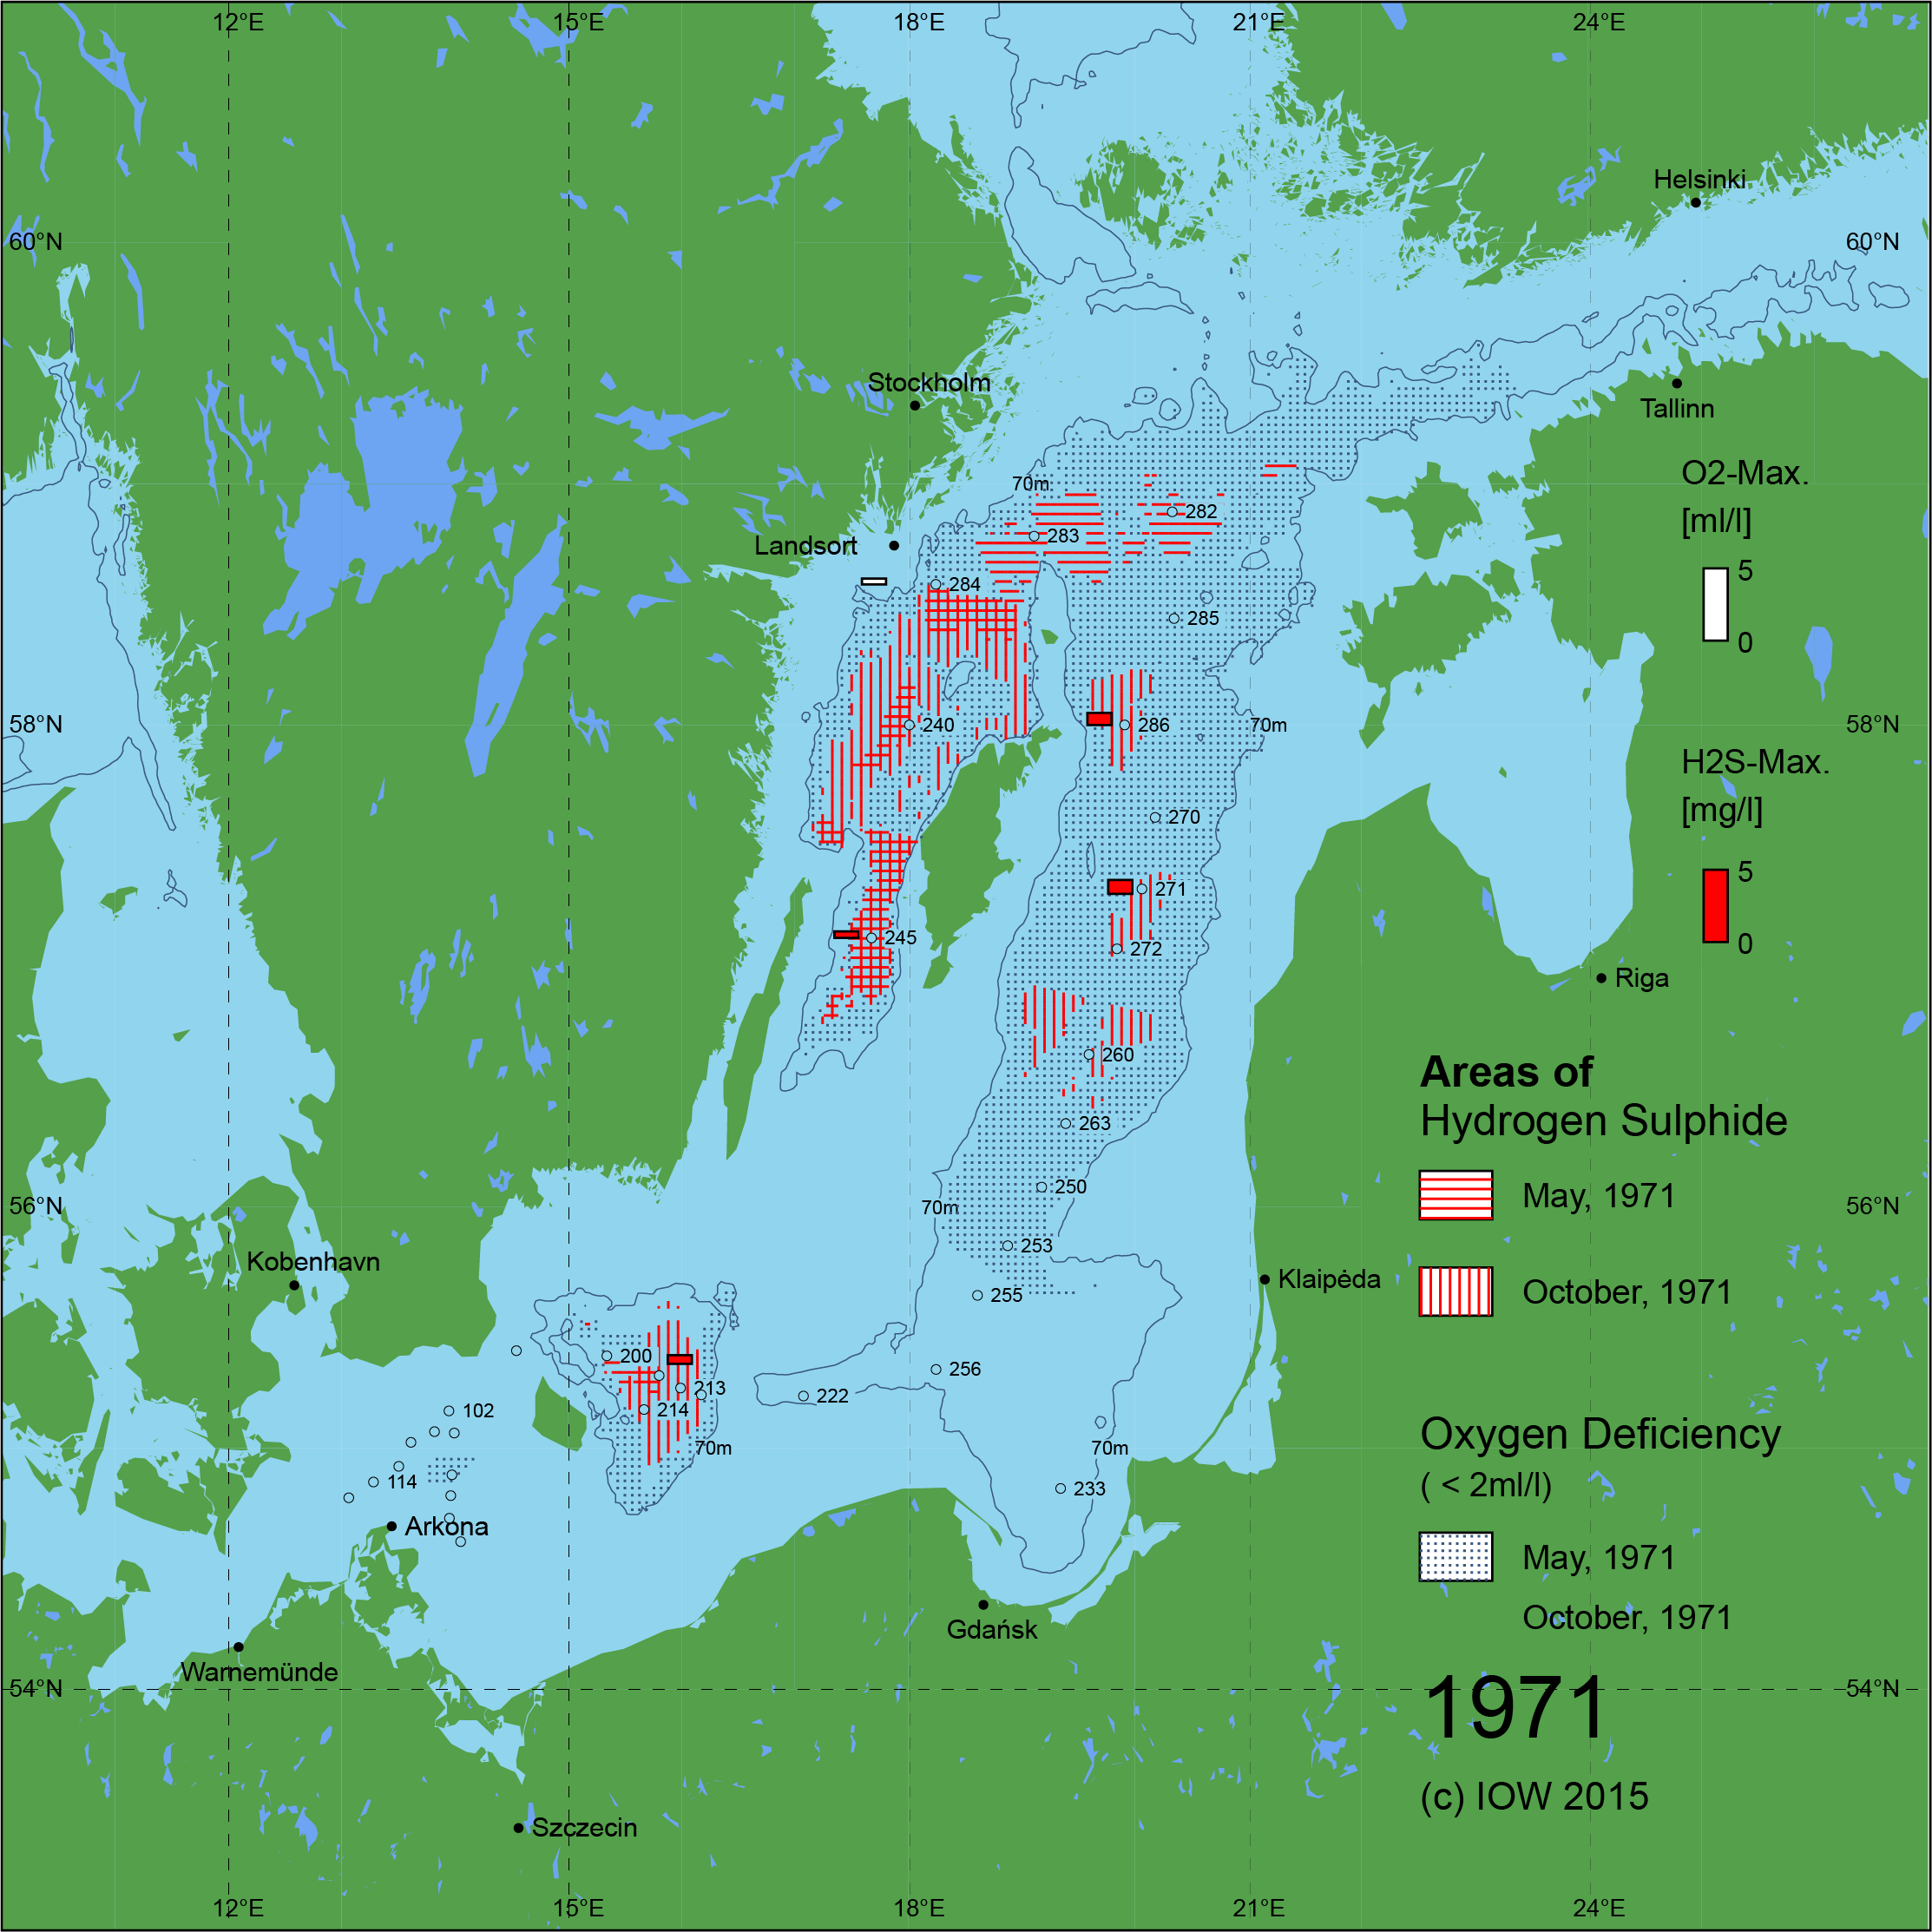 Sauerstoffarme und sauerstofffreie Gebiete in der Ostsee - 1971